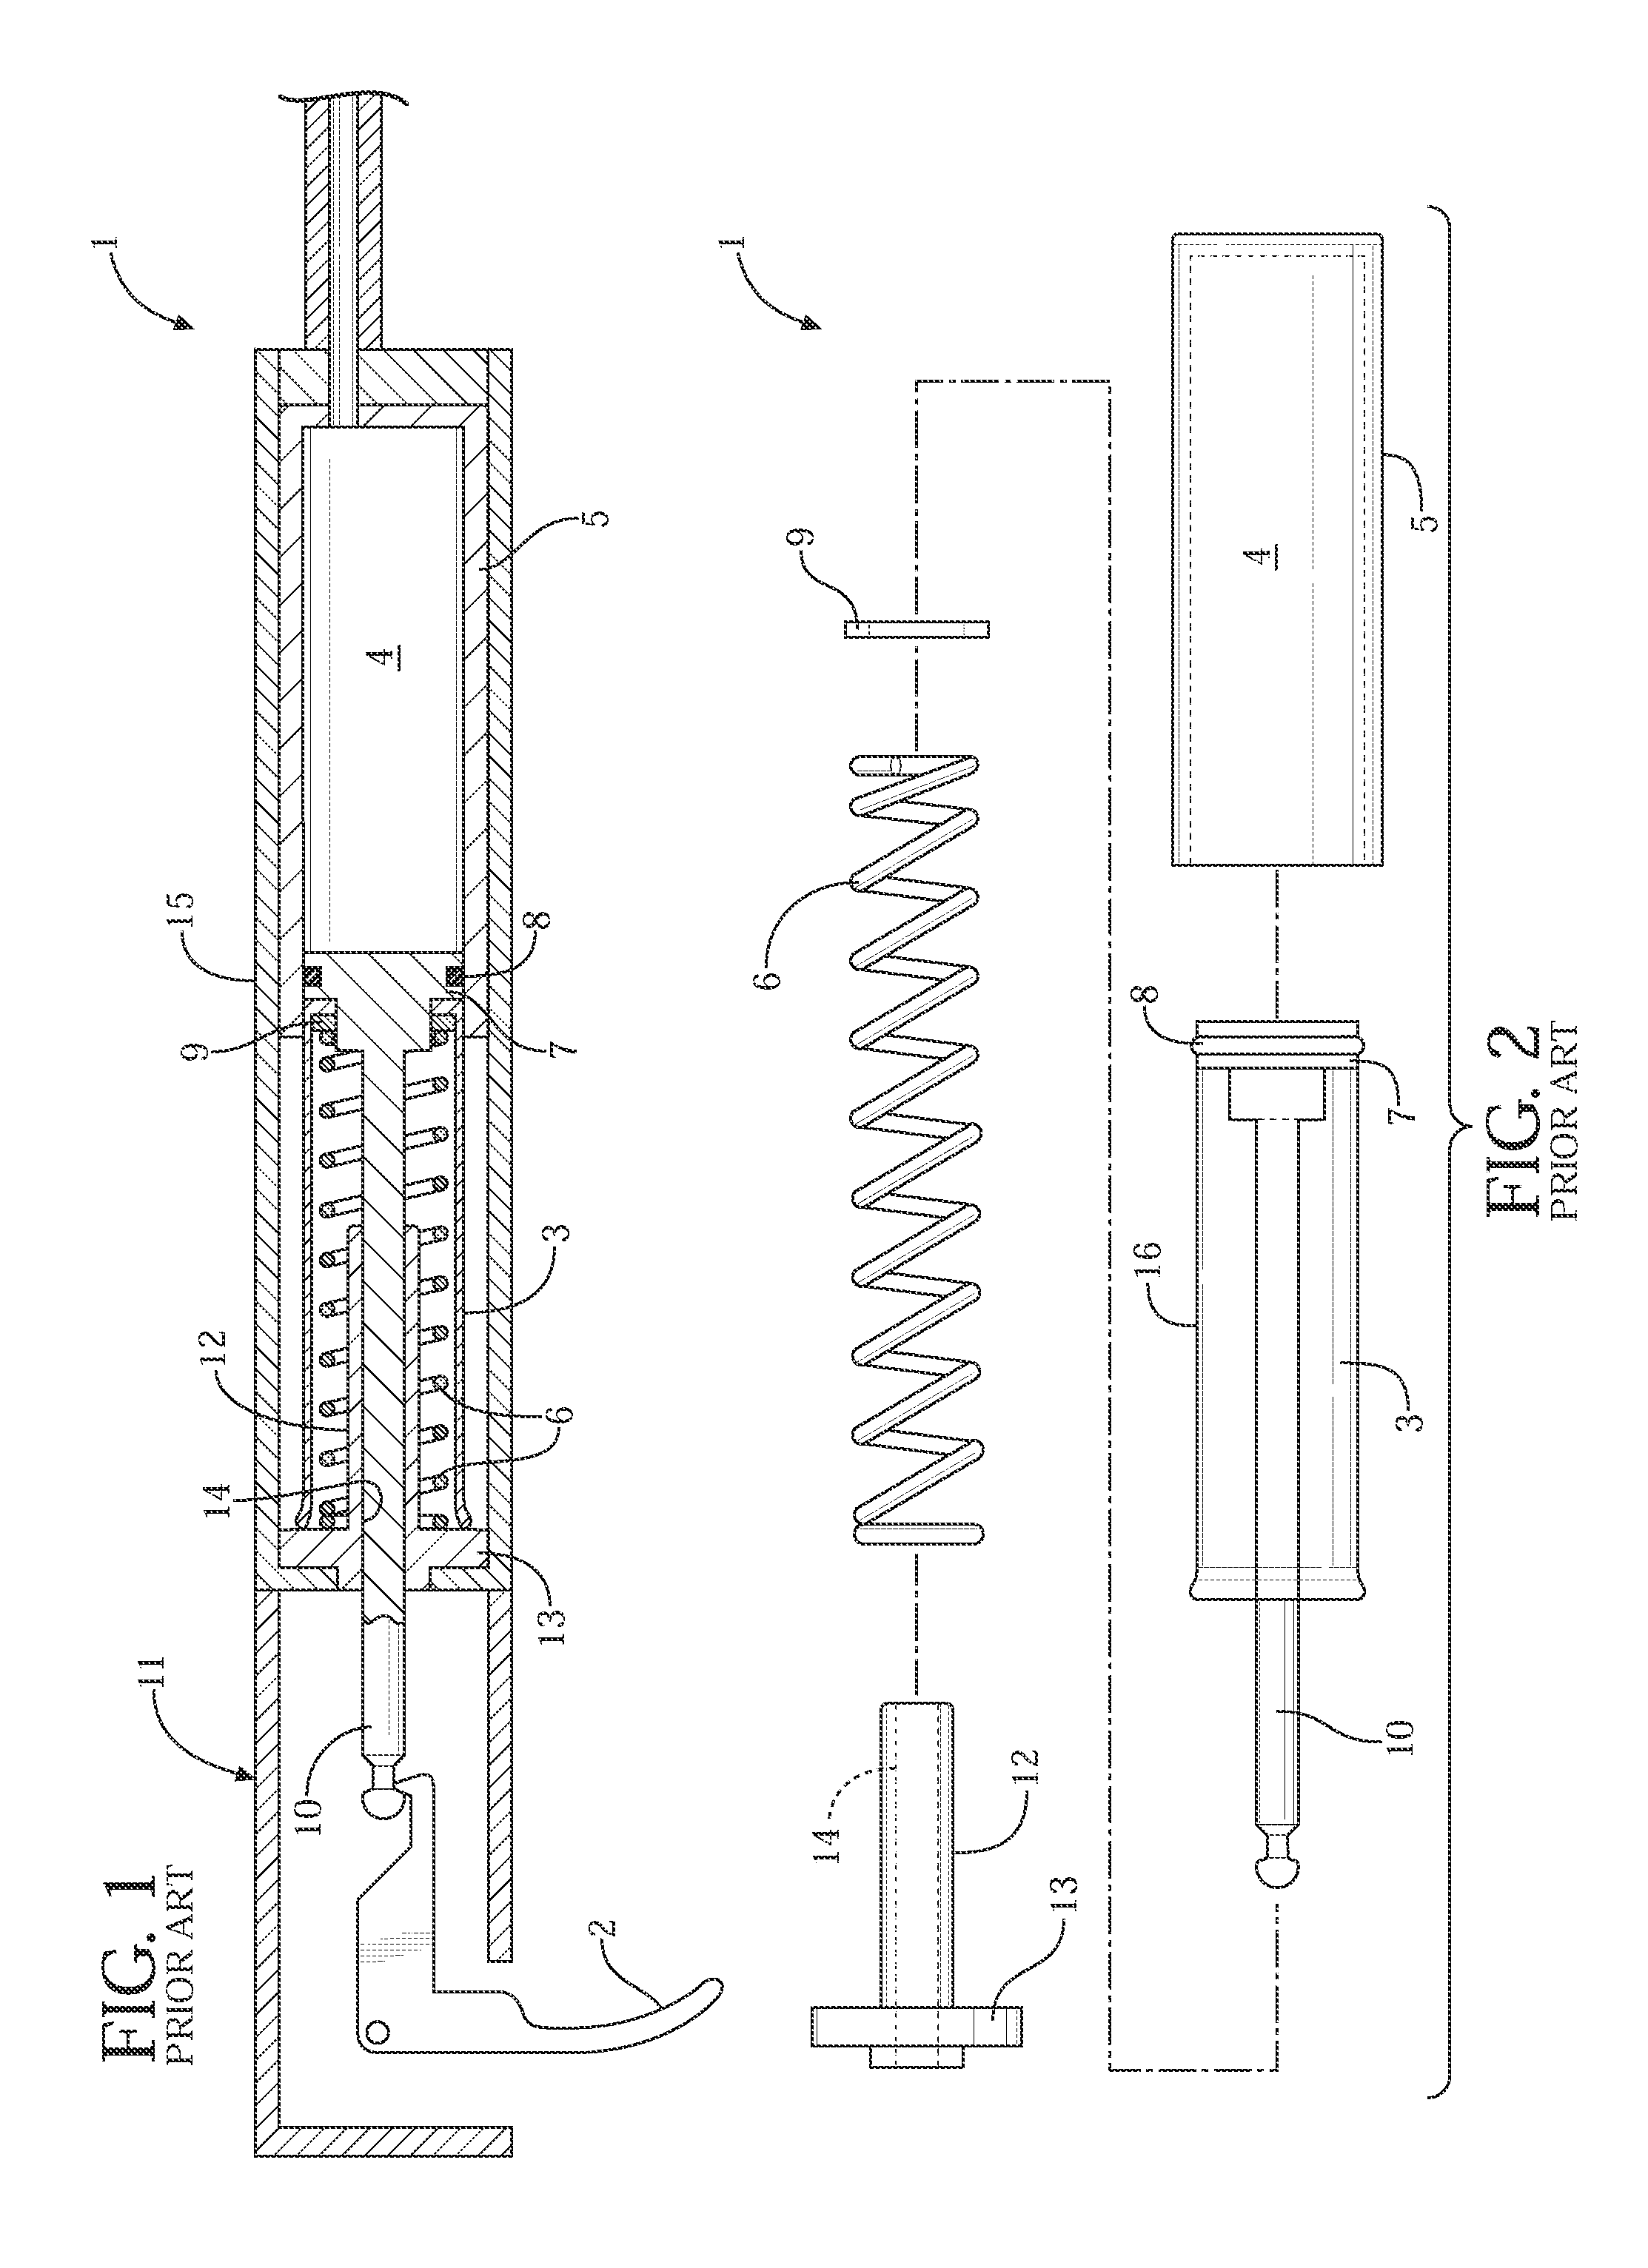 Air gun vibration dampener and method